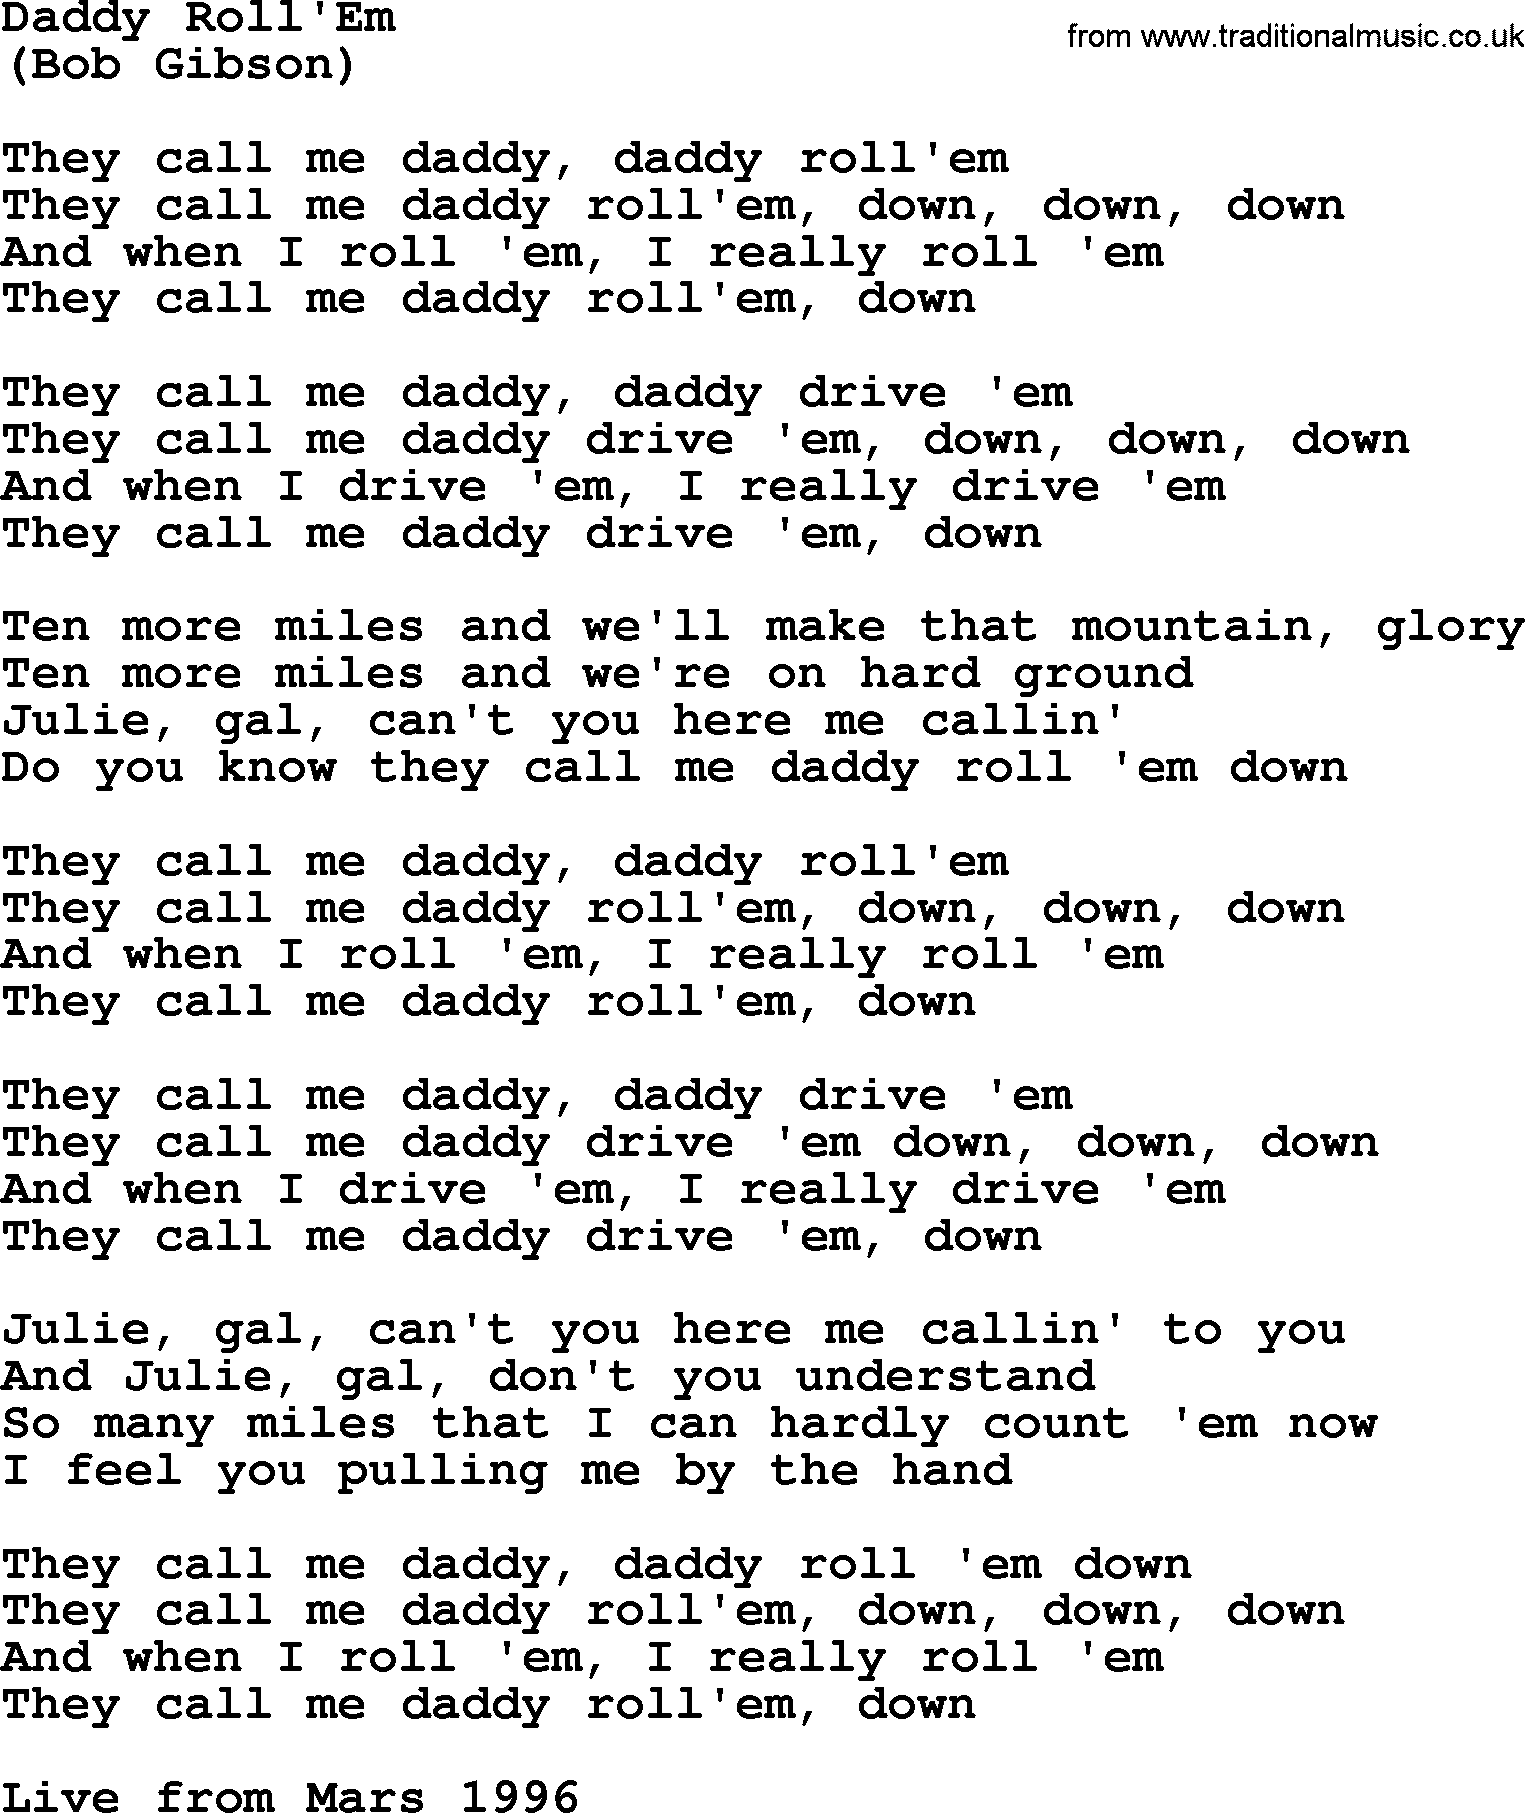 The Byrds song Daddy Roll'em, lyrics